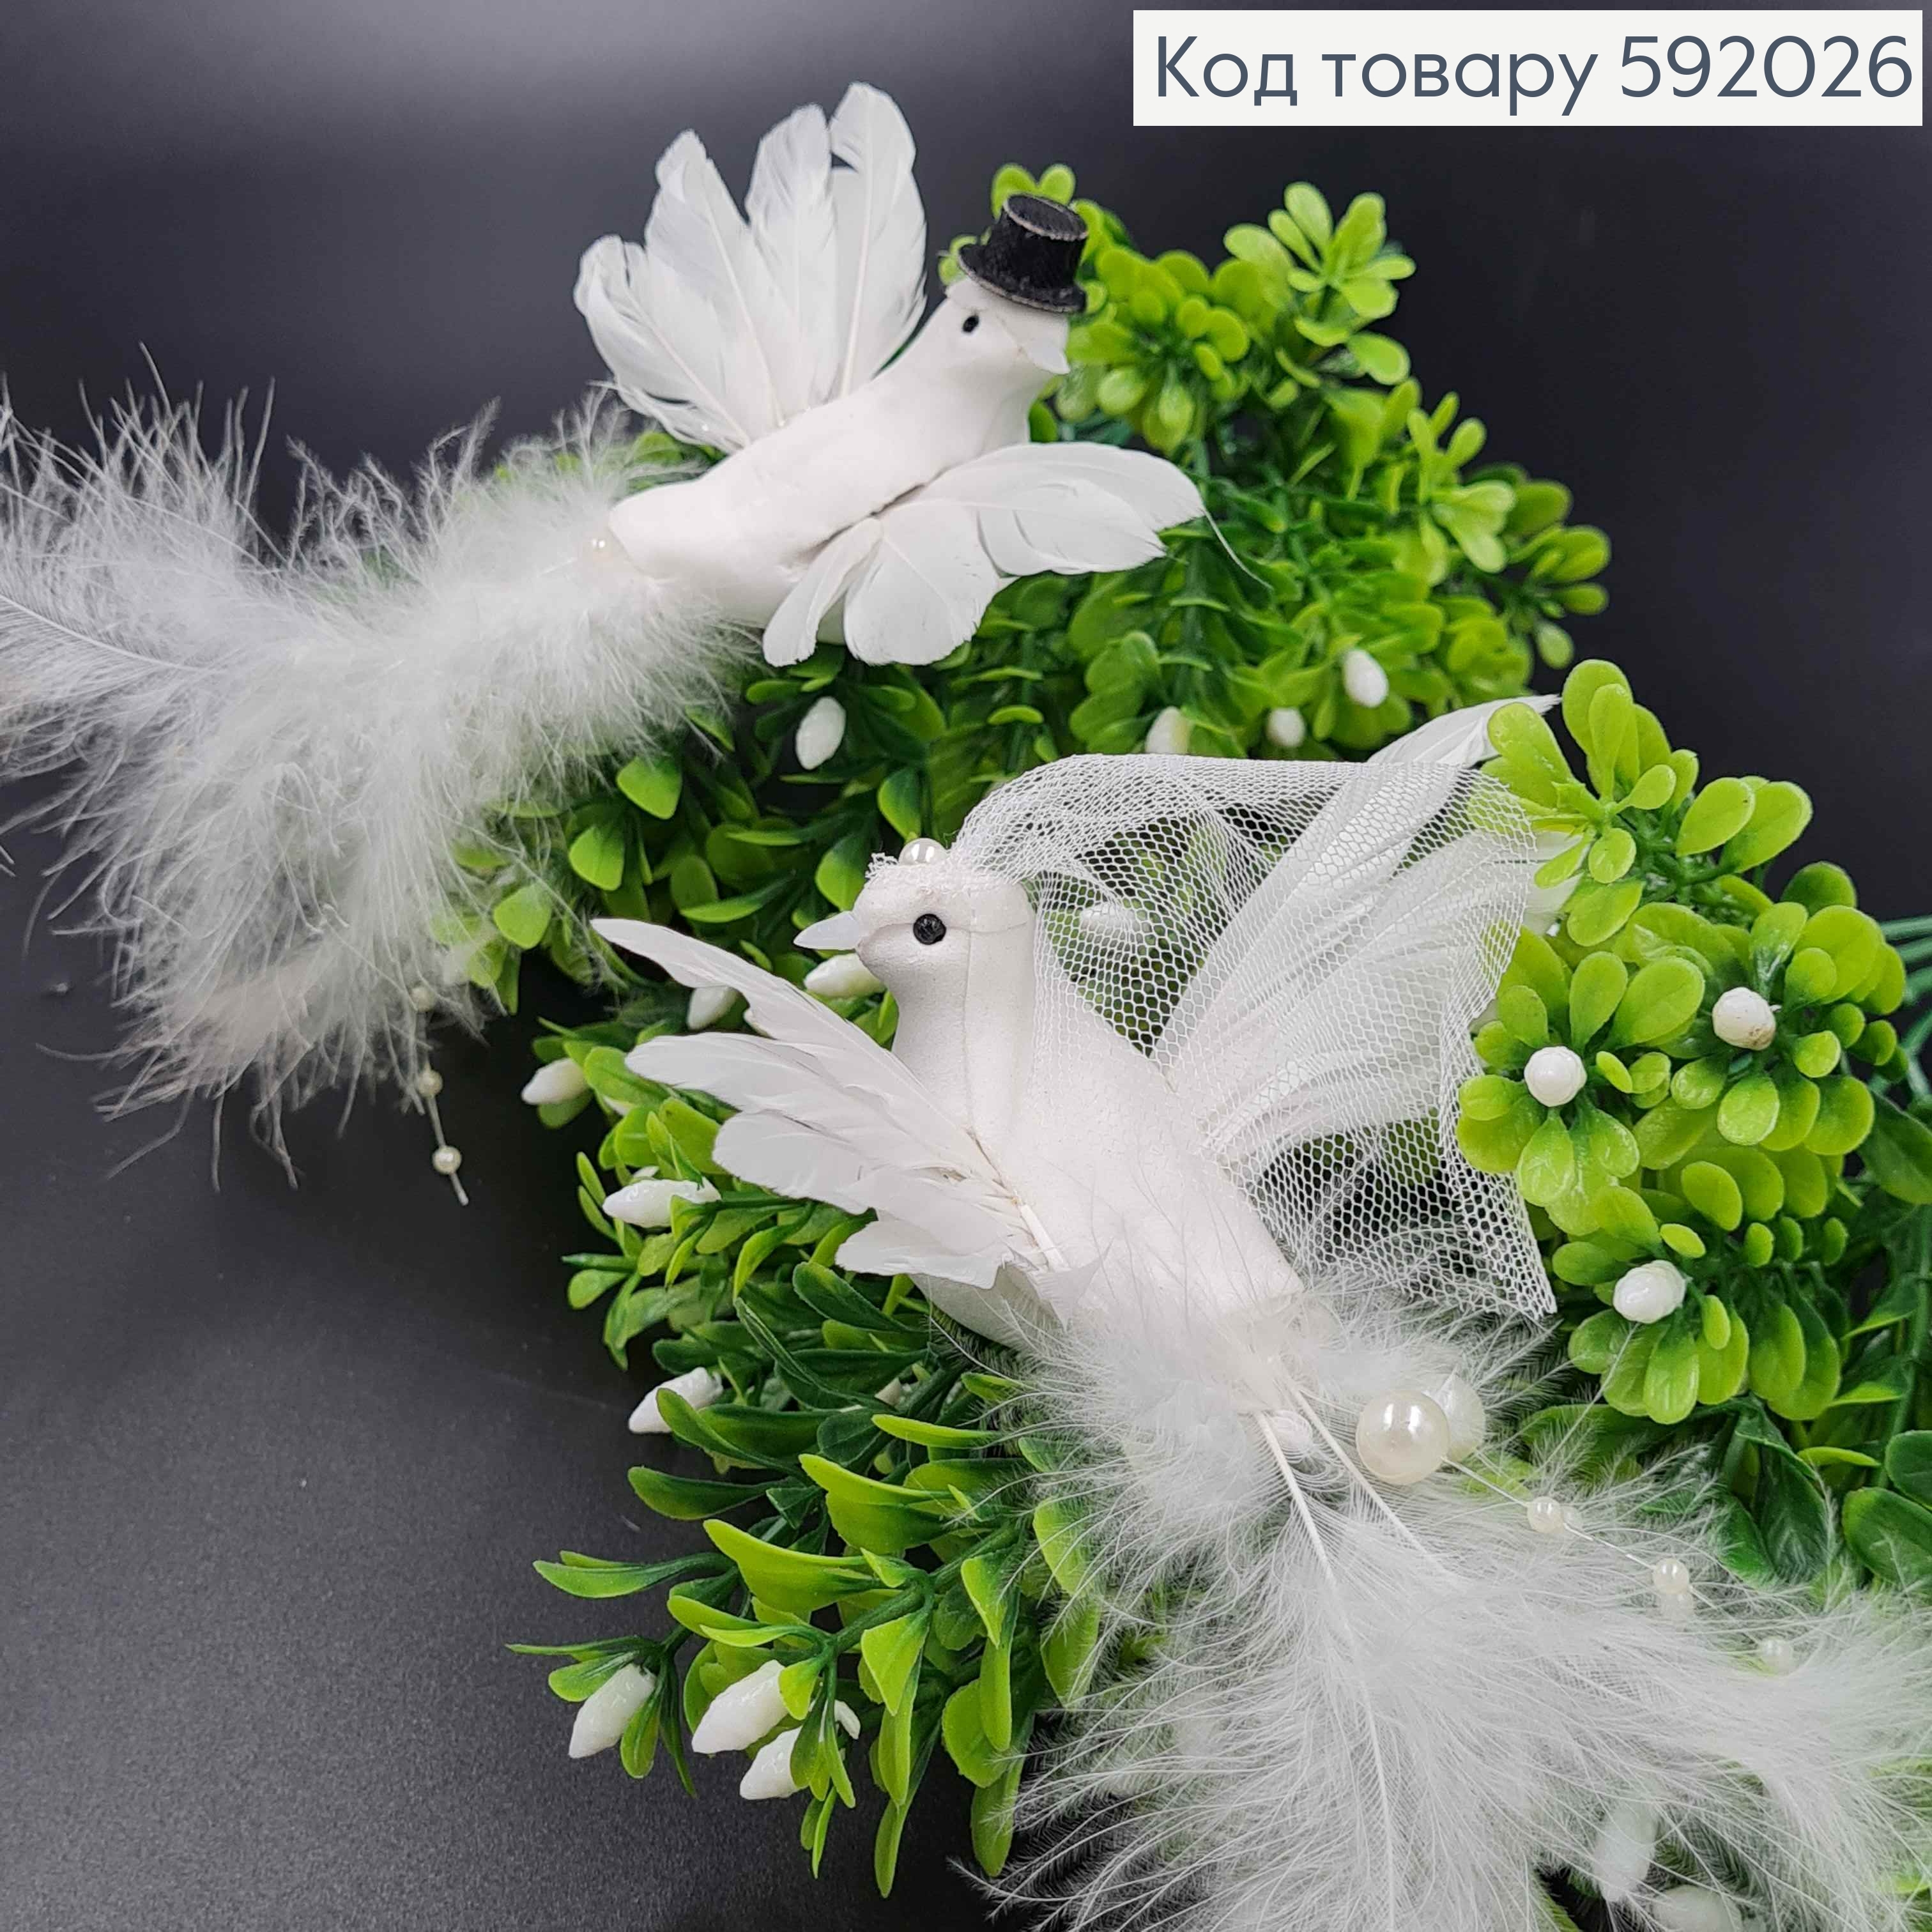 Флористическая заколка, 14см, молодожены ГОЛУБ И ГОЛУБКА белые (2шт)из перьев с жемчужинами, Польша 592026 фото 2